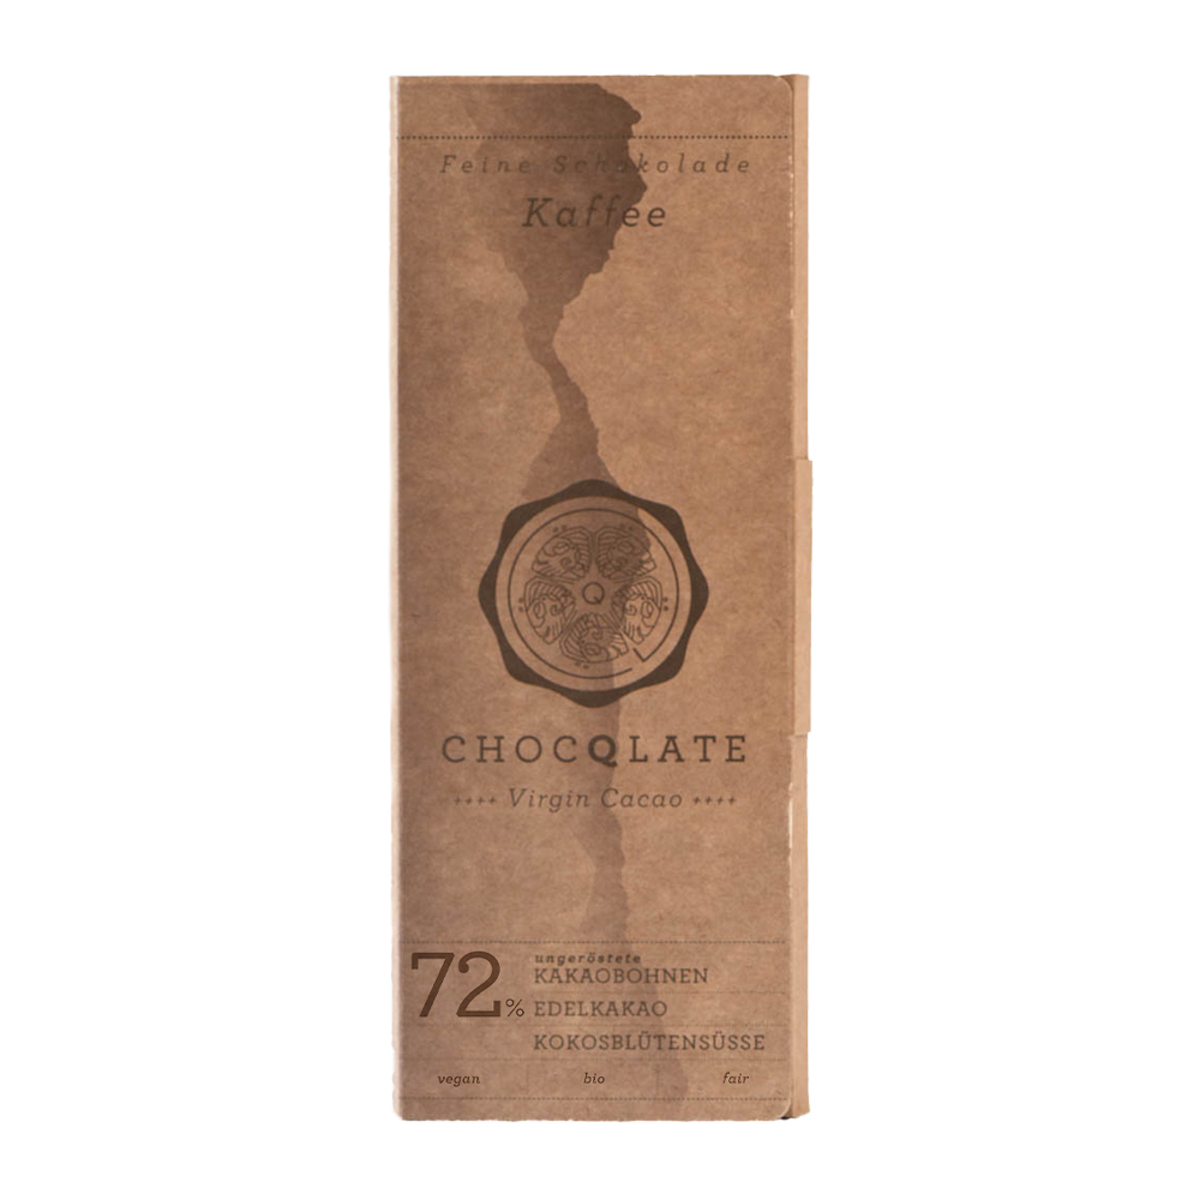 Coffret Chocolat N ° 14 Café - Matcha - Pur - Noix de coco